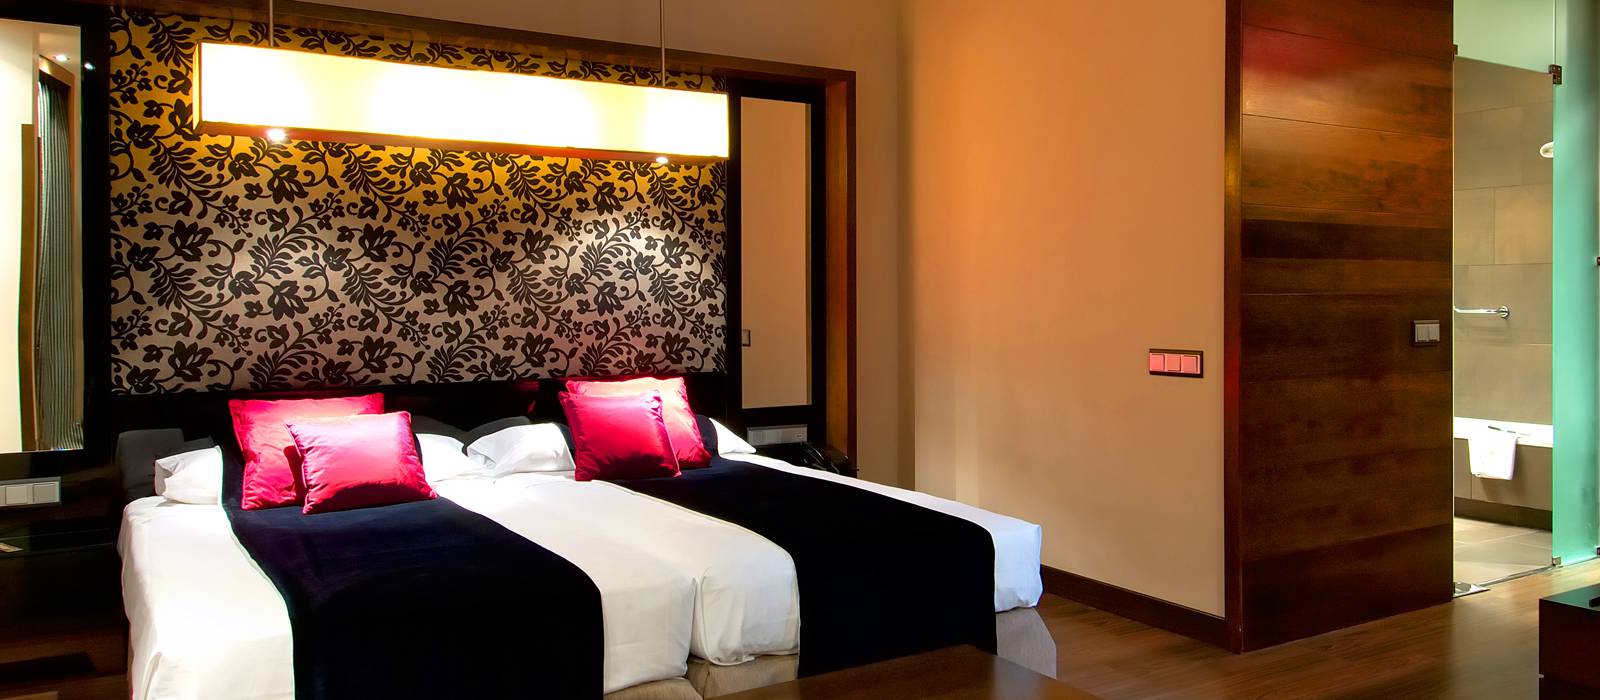 Ofertas Hotel Madrid Soho - Vincci Hoteles - Alójate 3 noches y ahorra